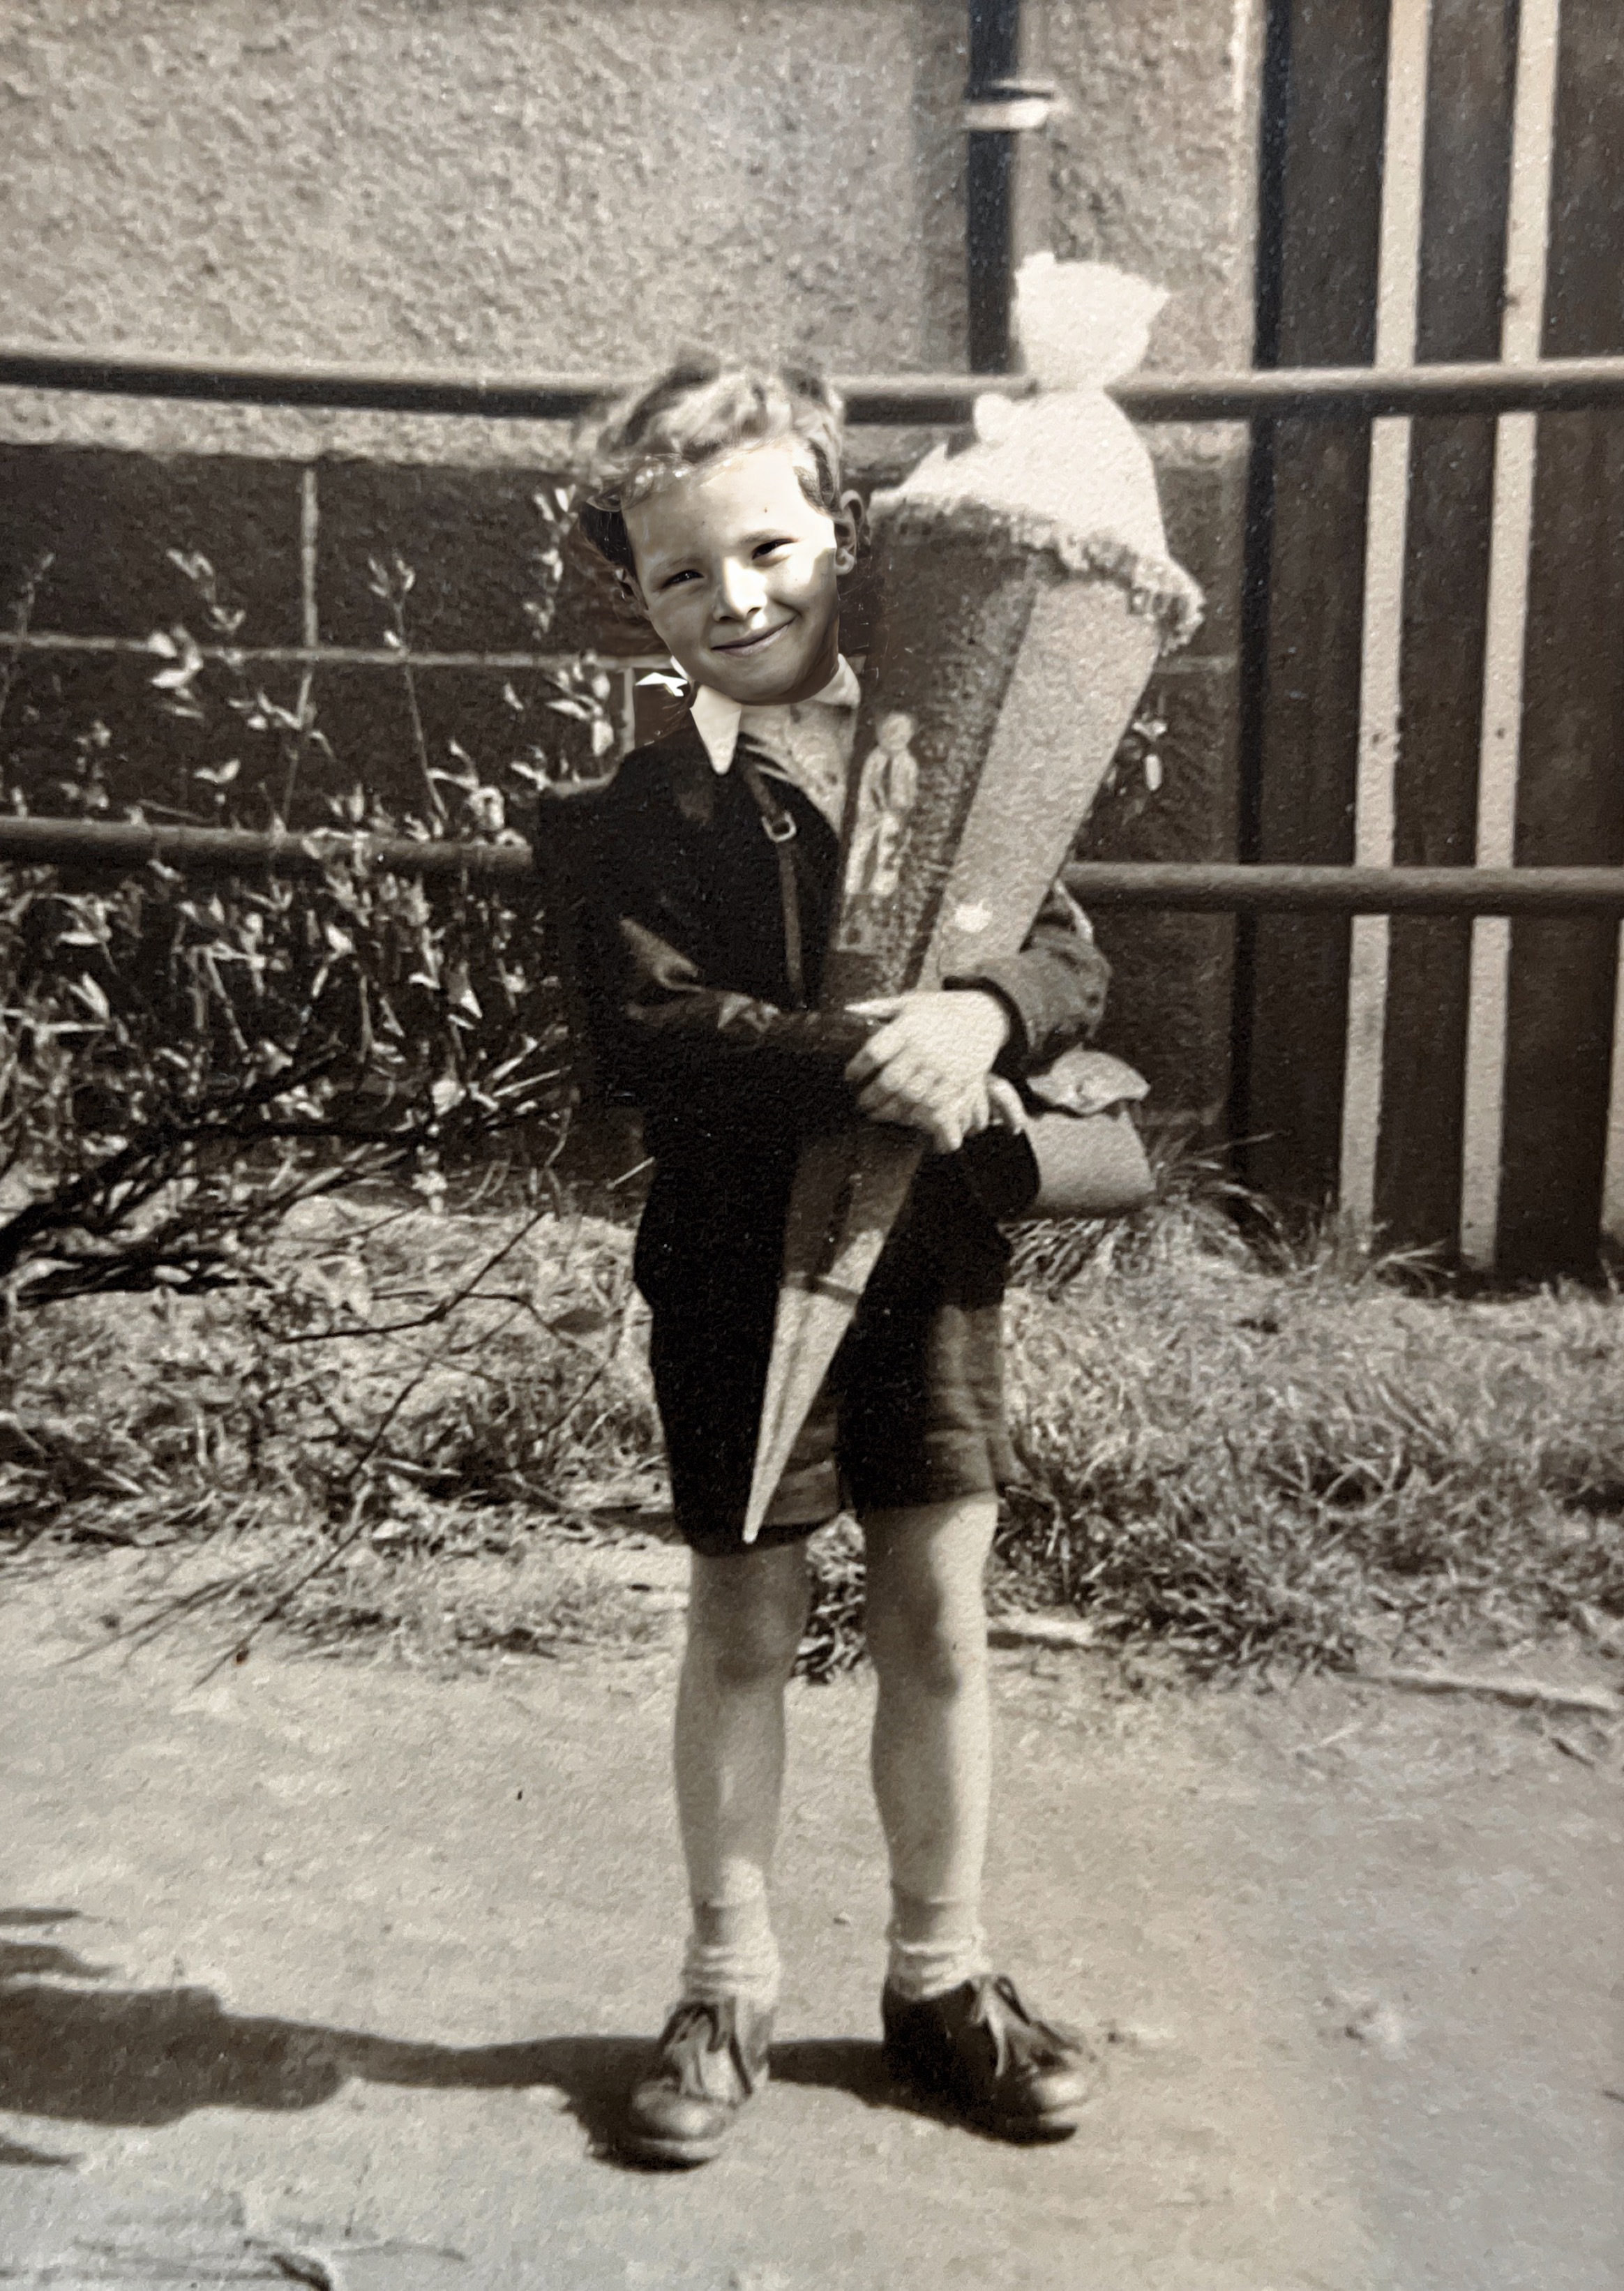 Erster Schultag 1952 in Allendorf, bei Kirchheim, Kreis Marburg Hessen